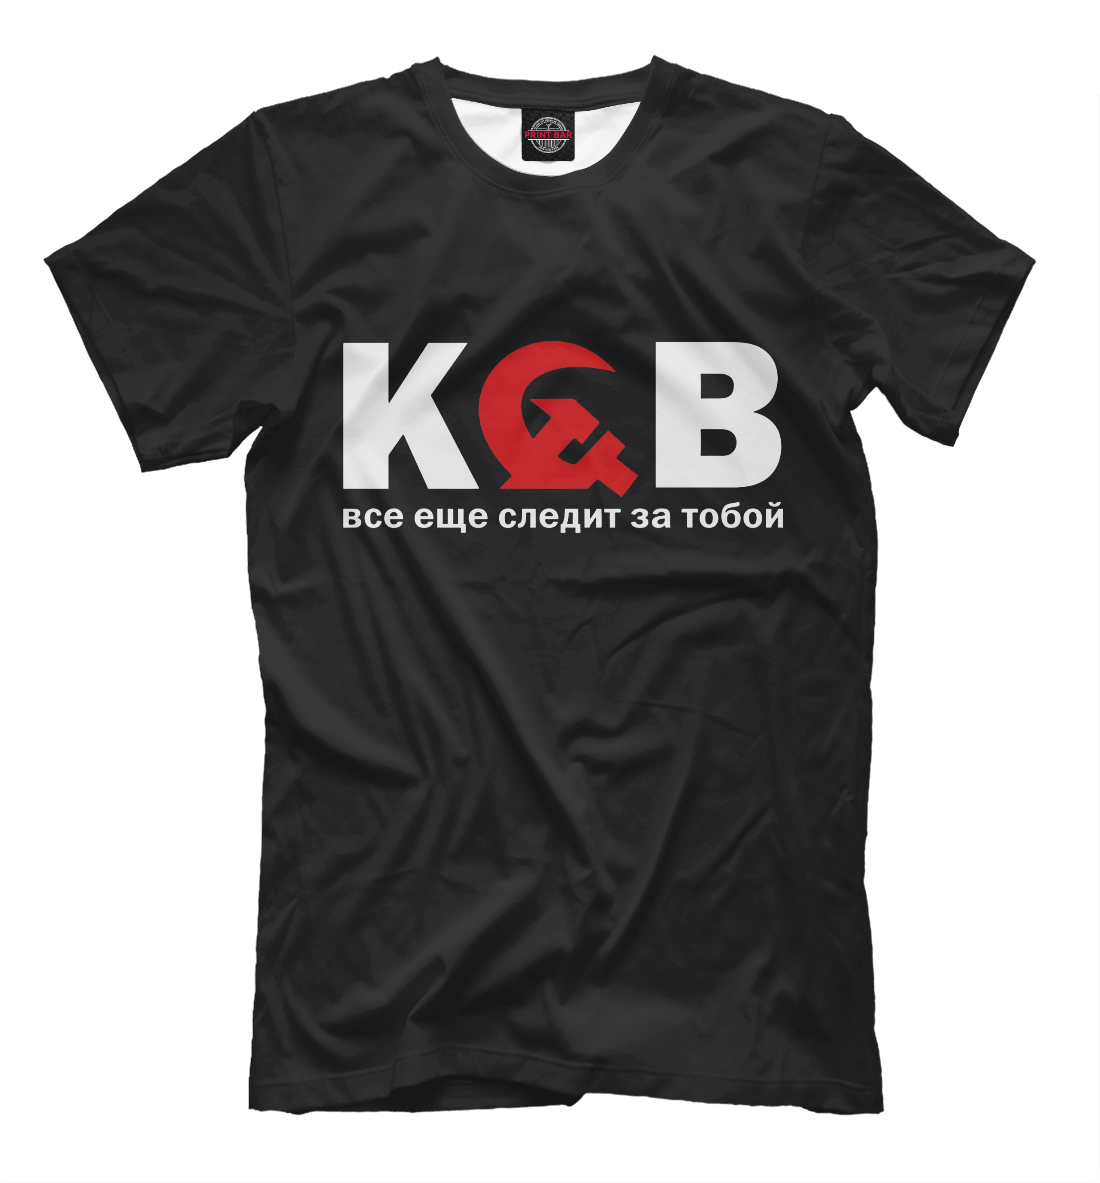 Футболка КГБ для мальчиков, артикул: KGB-721297-fut-2mp